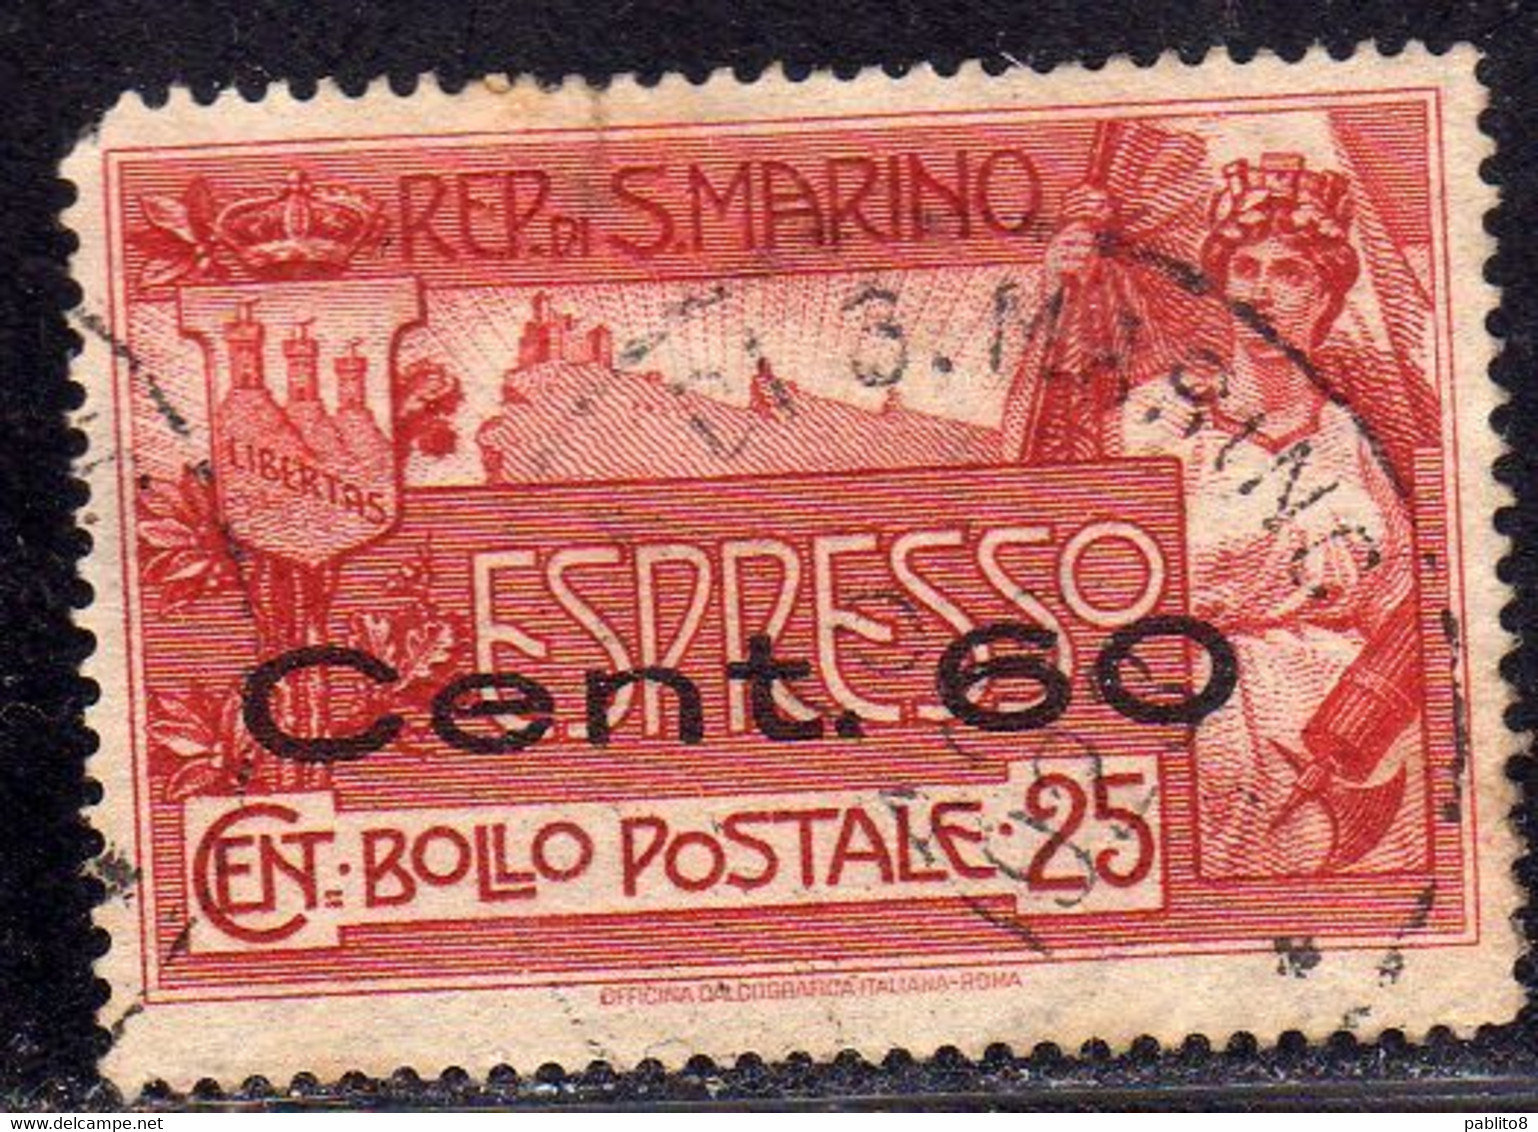 REPUBBLICA DI SAN MARINO 1923 ESPRESSO SPECIAL DELIVERY CENT. 60 SU 25c USATO USED OBLITERE' - Eilpost